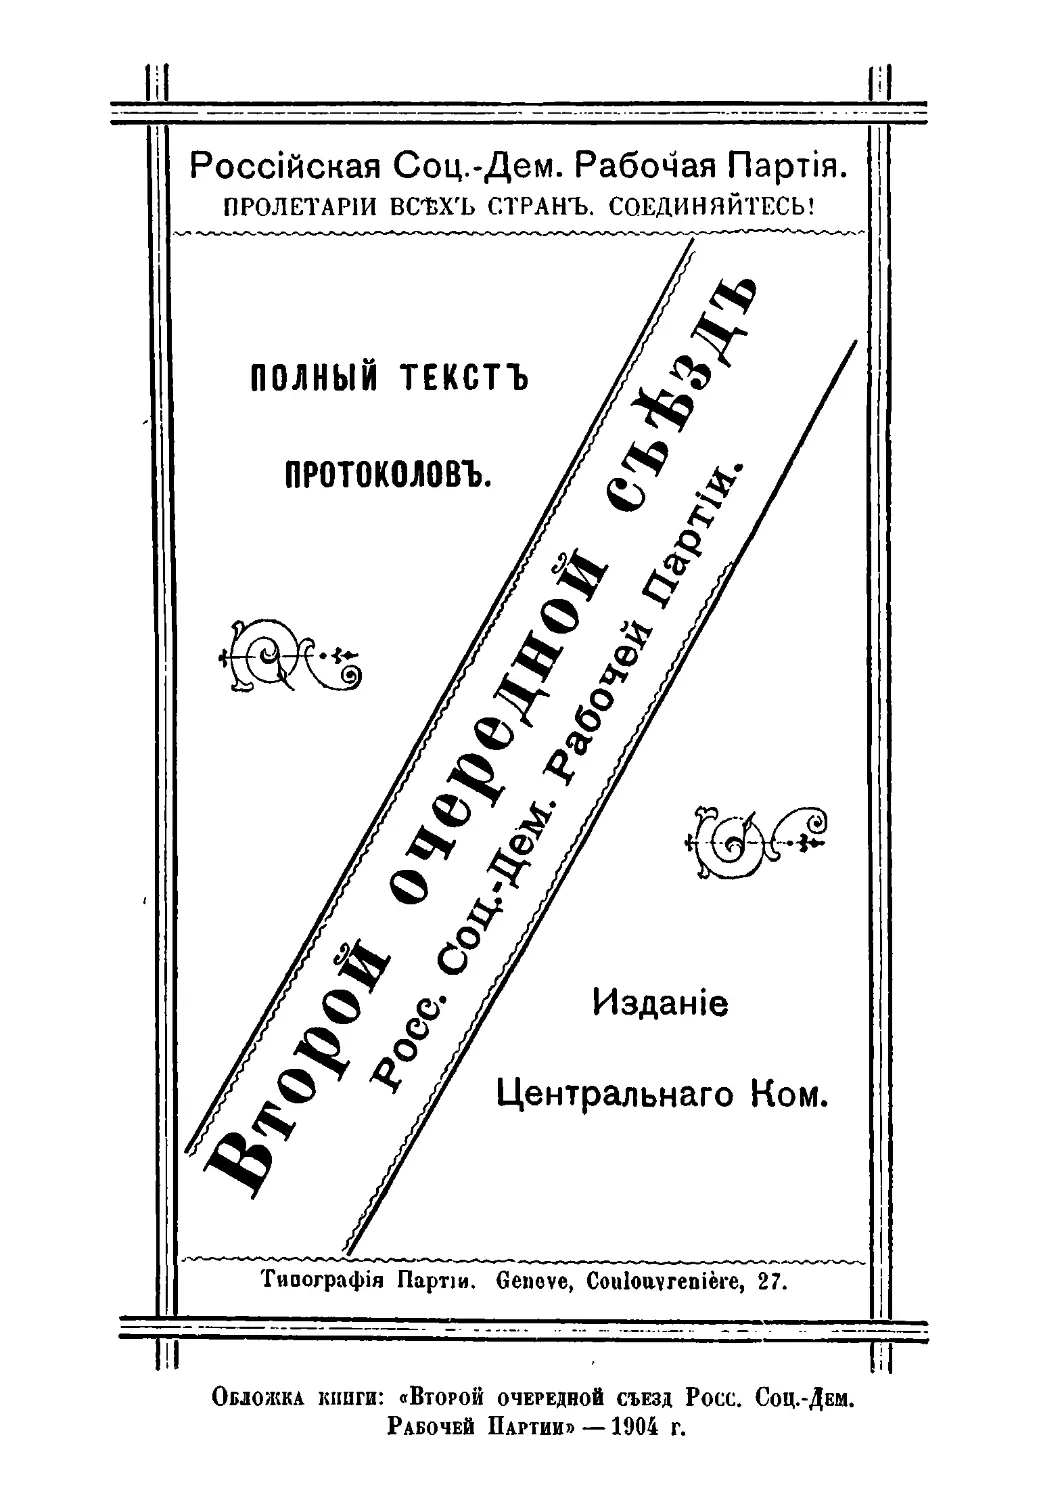 Обложка книги: «Второй очередной съезд Росс. Соц.-Дем.Рабочей Партии» —1904 г.